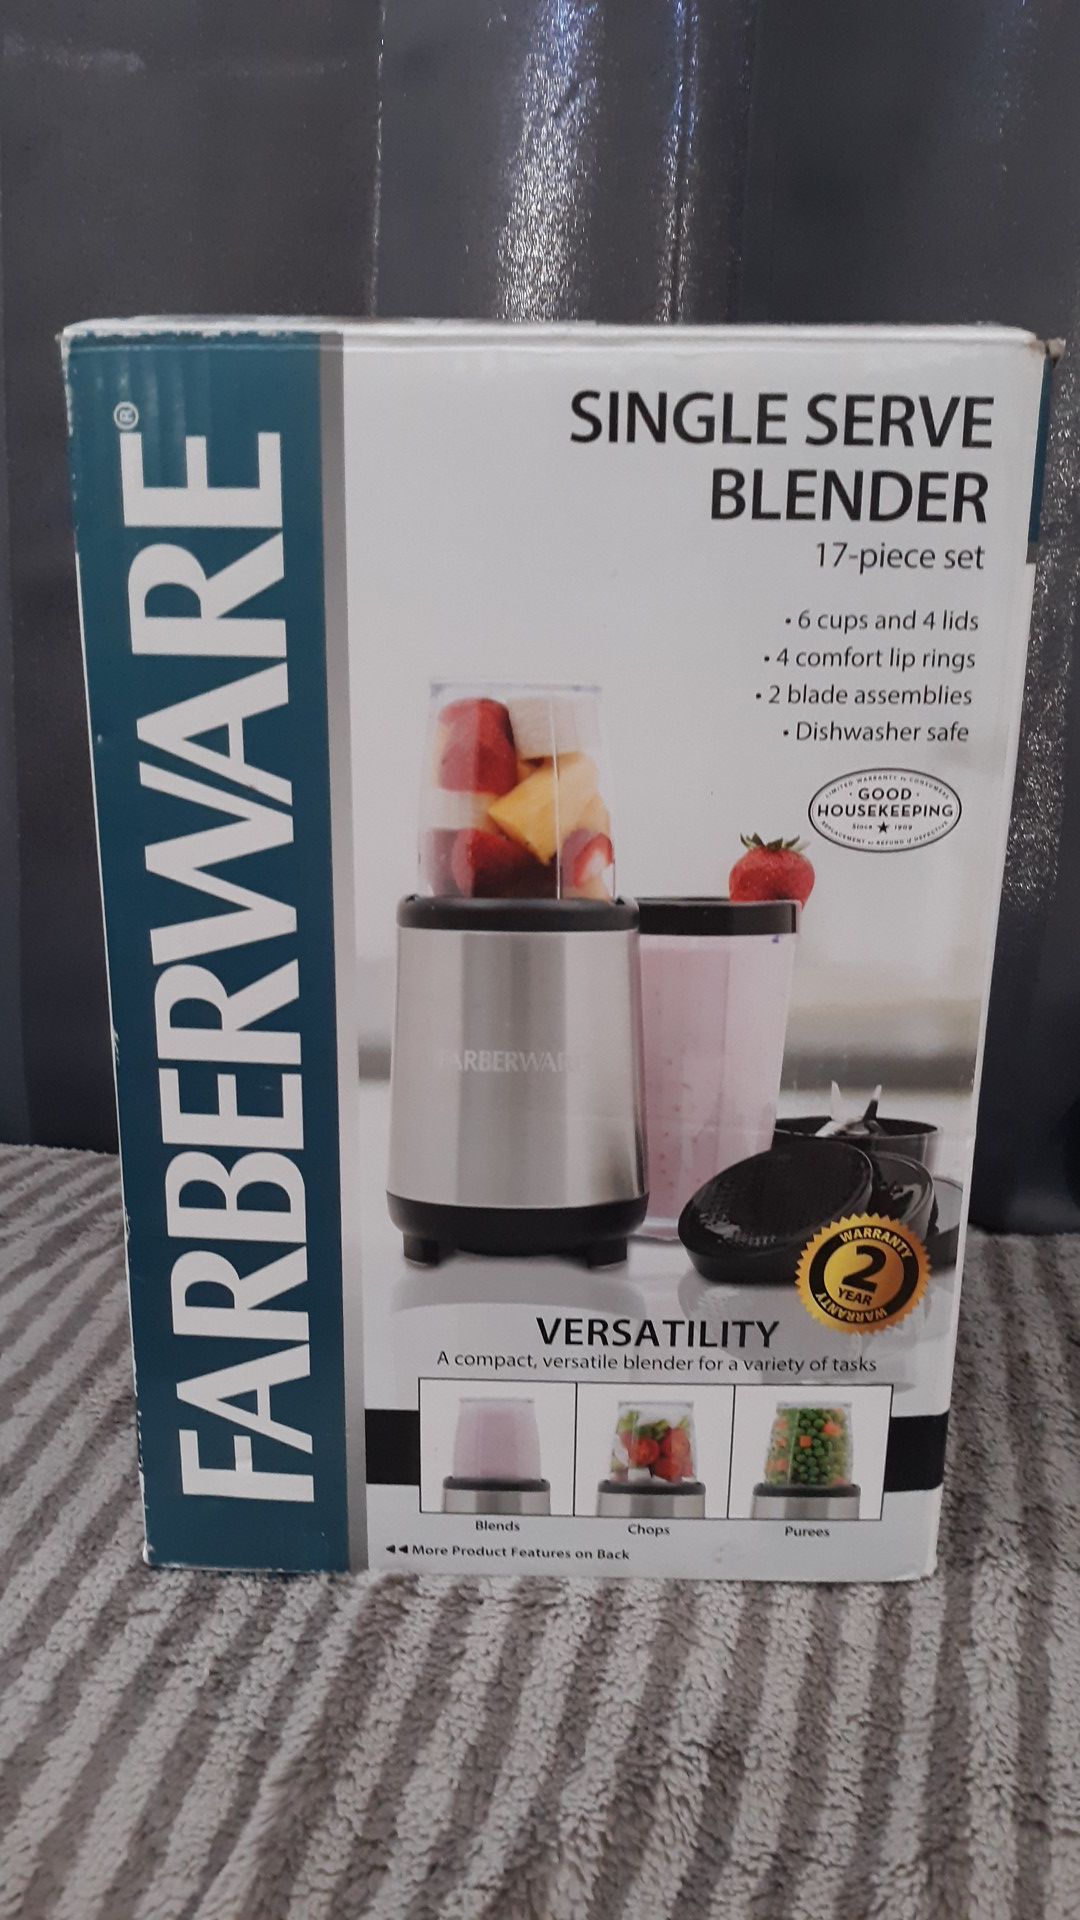 Farberware single serve blender